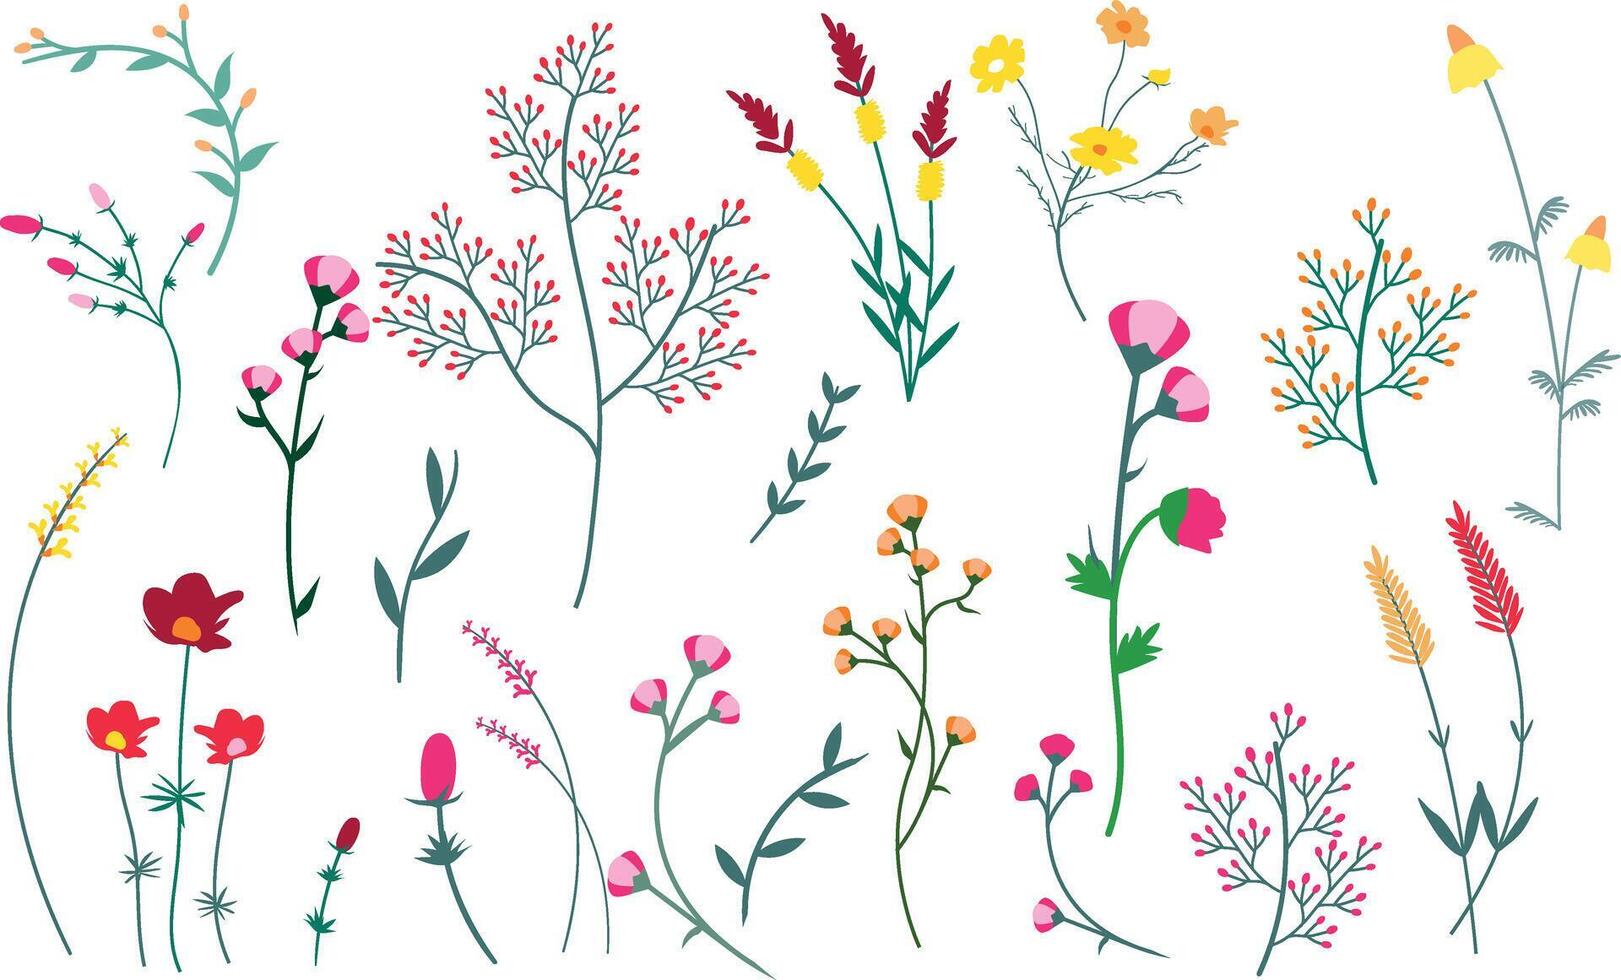 einstellen von Blumen und Pflanzen auf ein Weiß Hintergrund. Vektor Illustration.